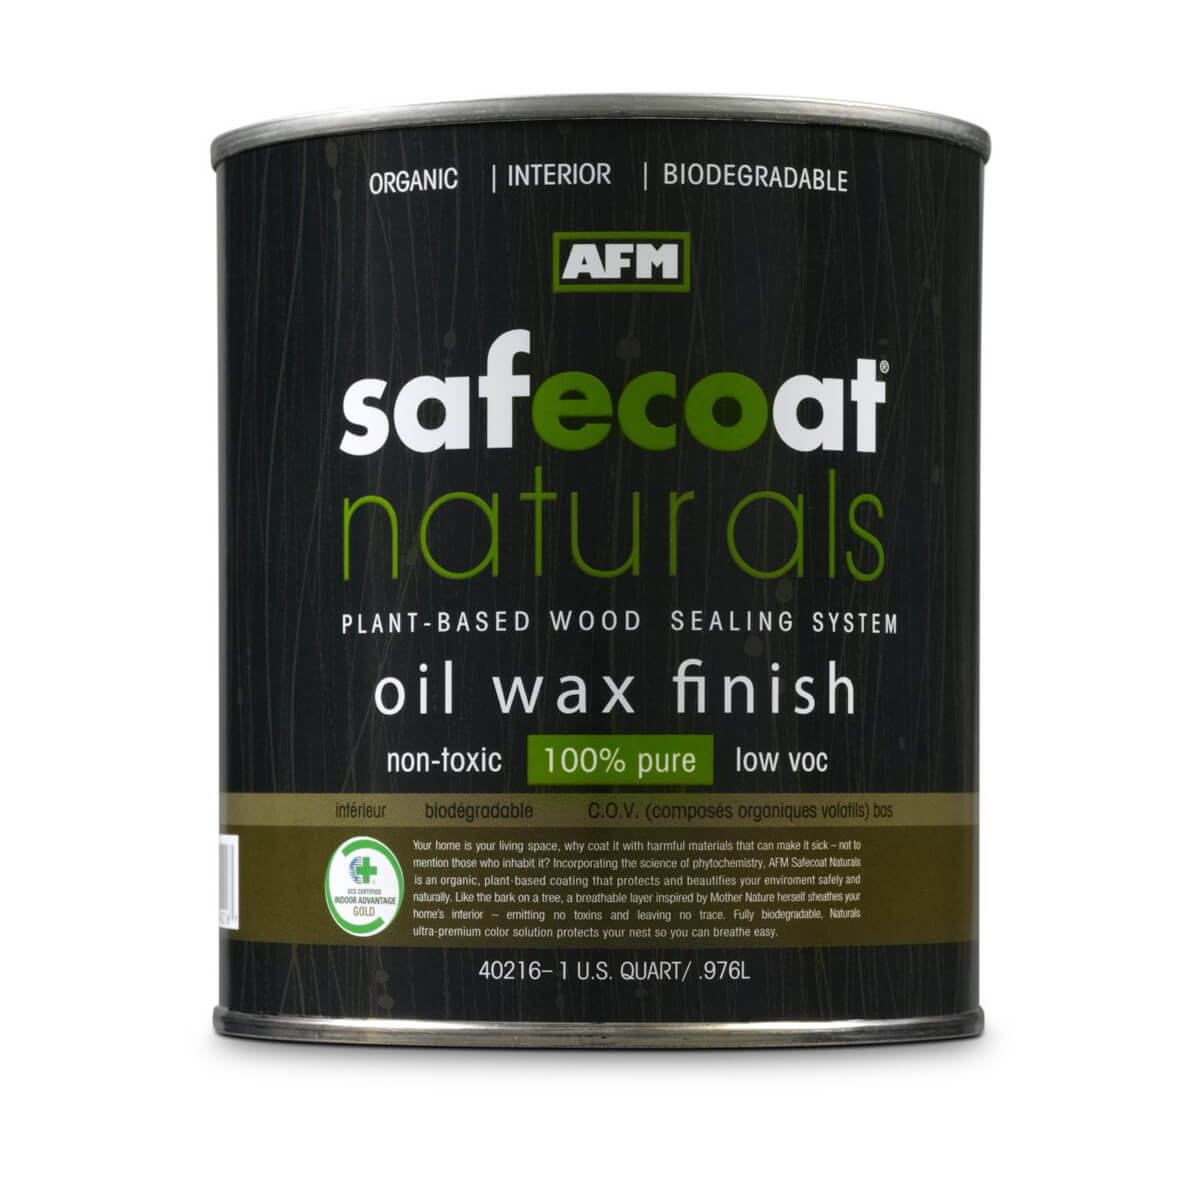 AFM naturals oil wax finish